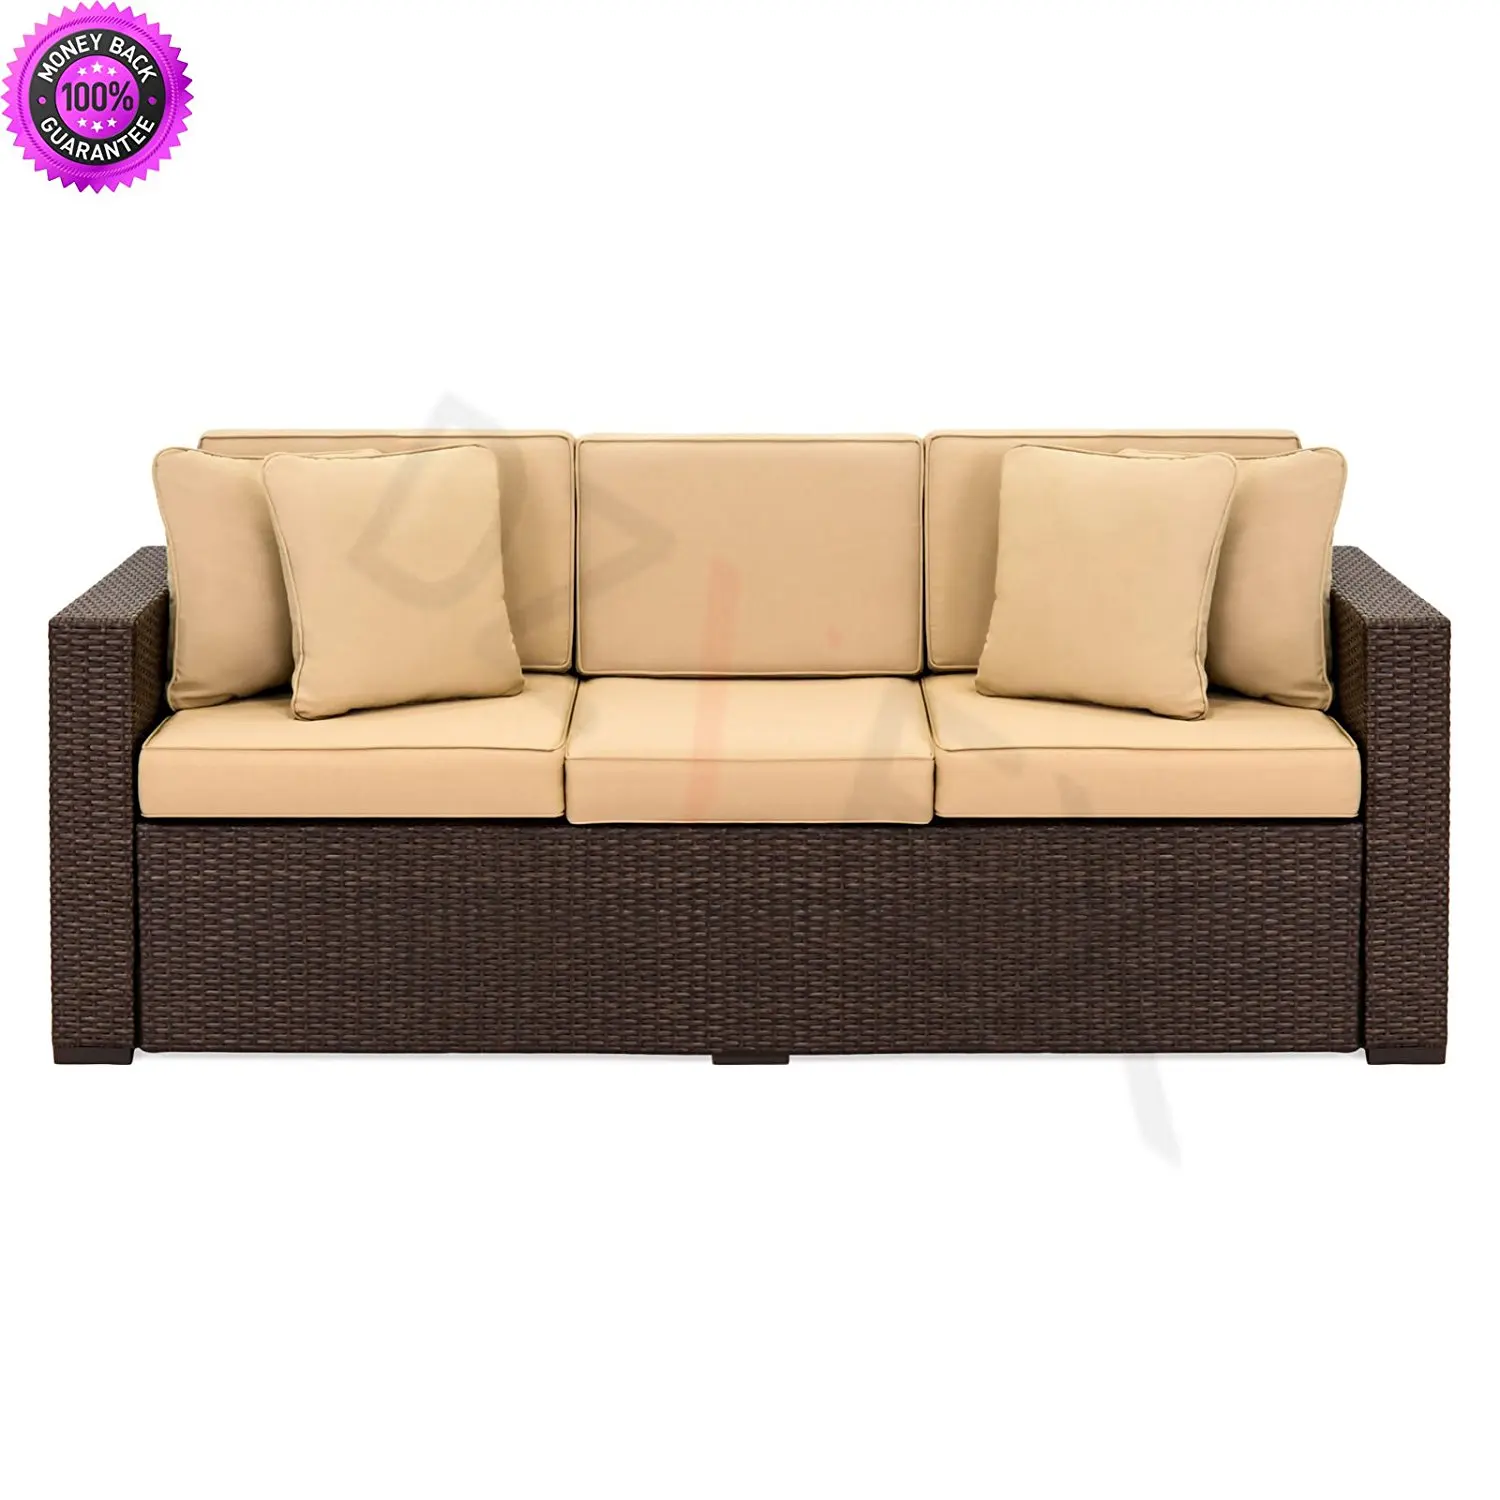 Buy DzVeX Outdoor Wicker Patio Furniture Sofa 3 Seater Luxury Comfort